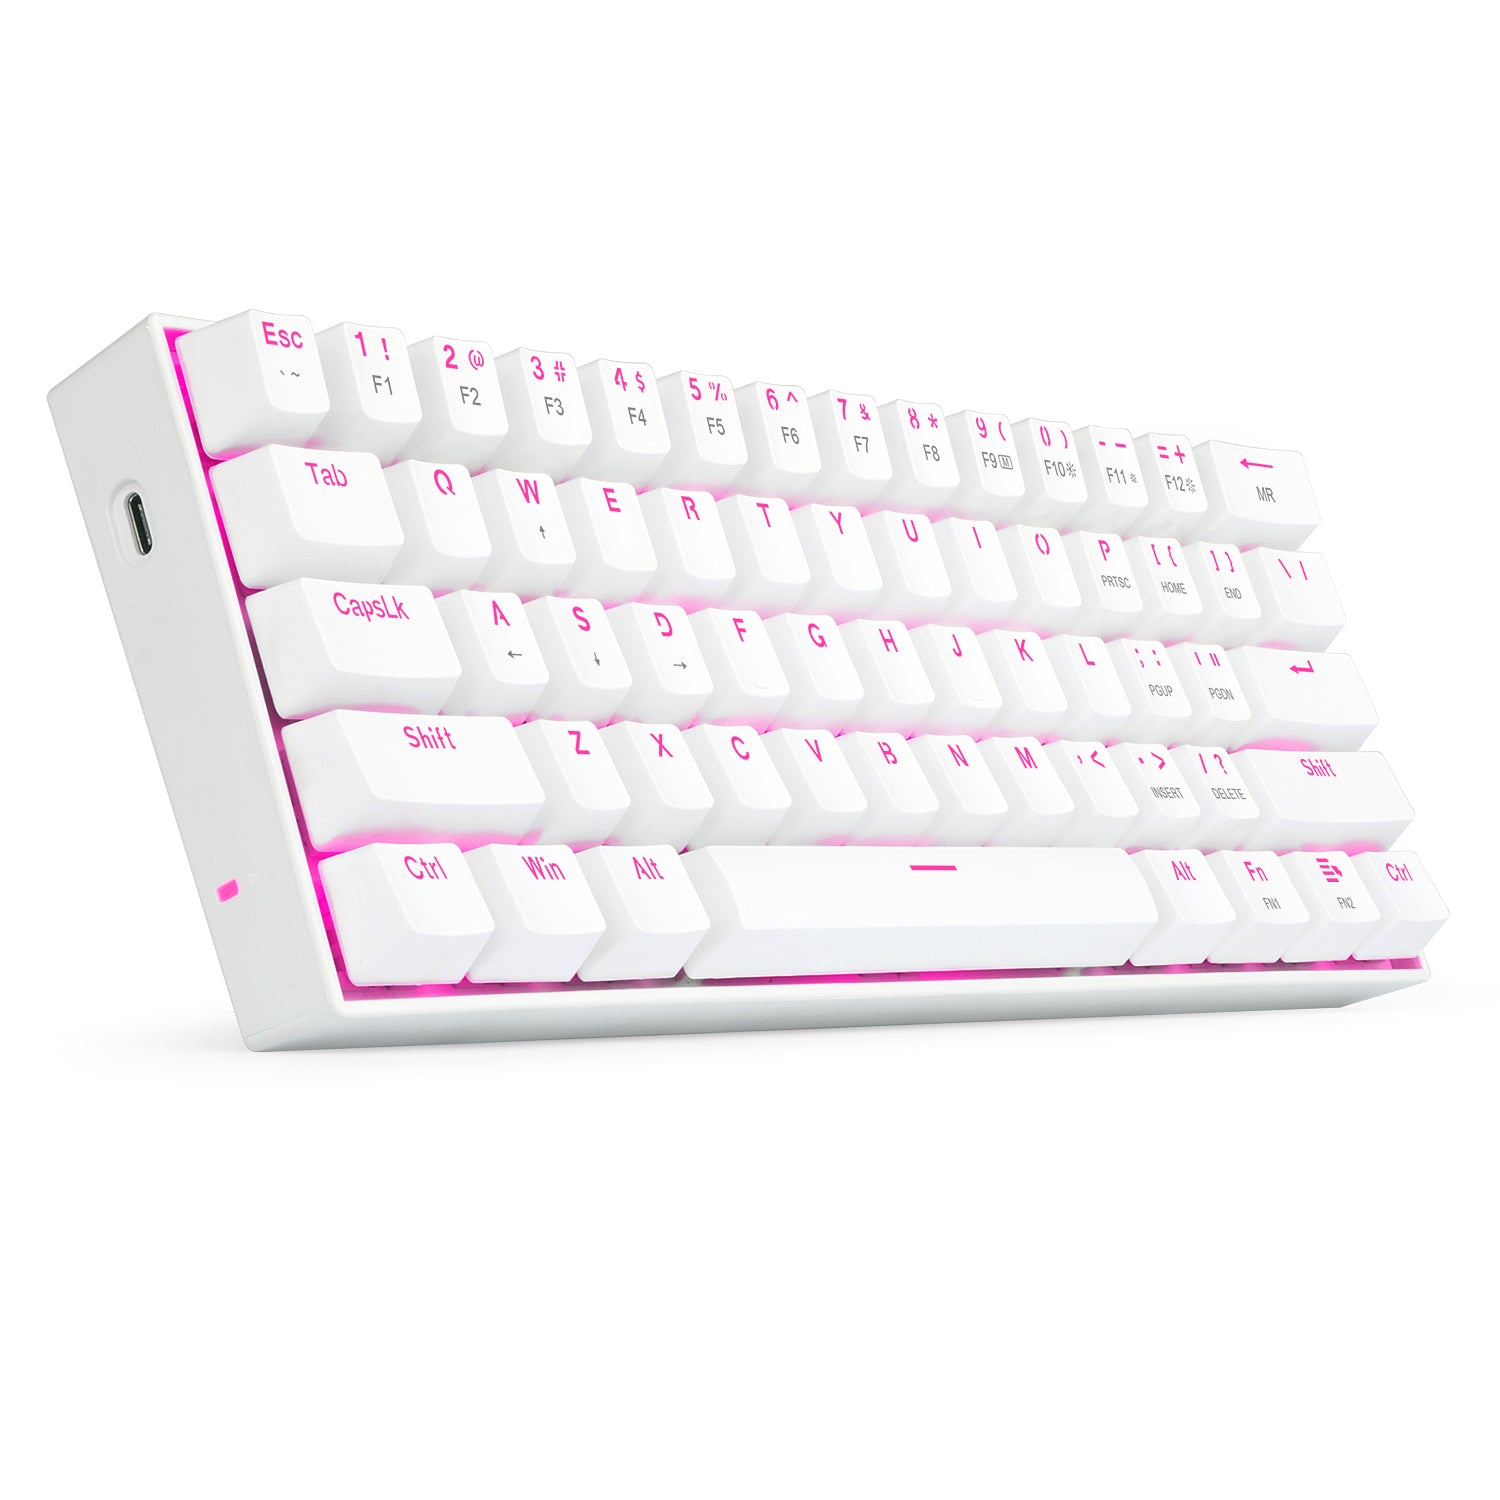 Redragon K630 60% Mechanical Gaming Keyboard Pink LED Backlit